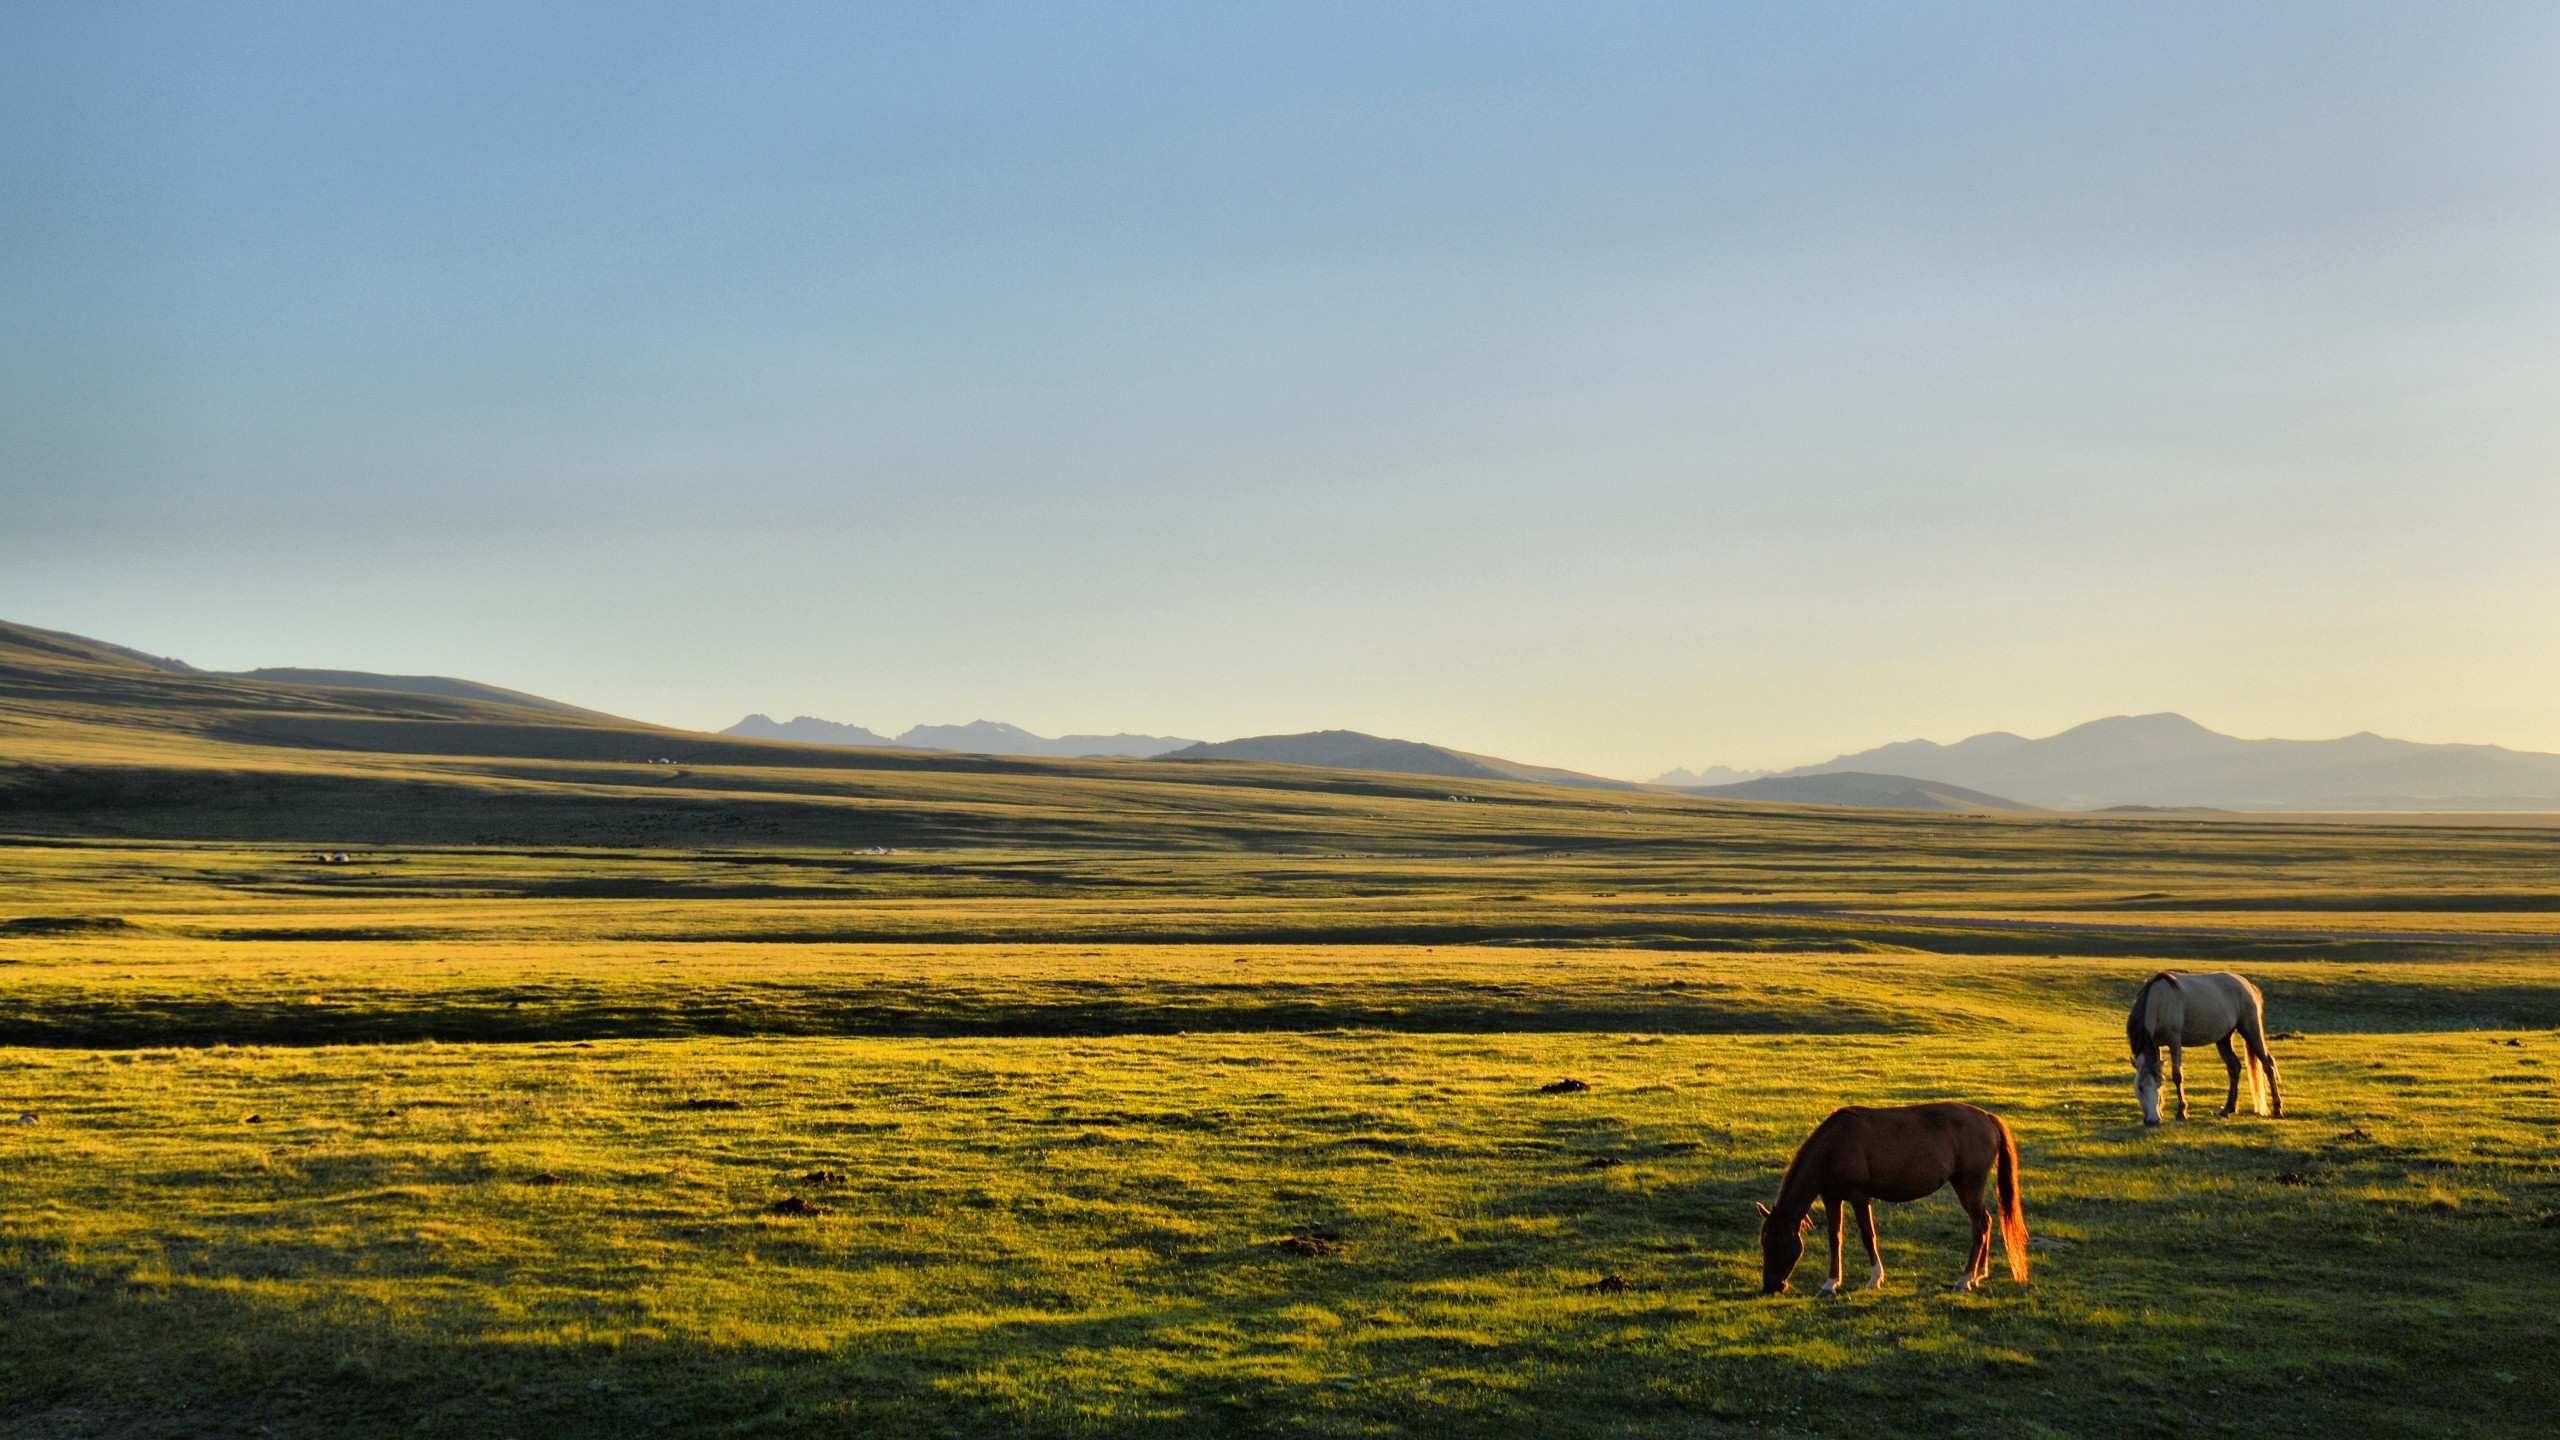 Horse Kyrgyzstan Song Kul Plains Grass Sunlight Calm Landscape Far View Clear Sky Field 2560x1440